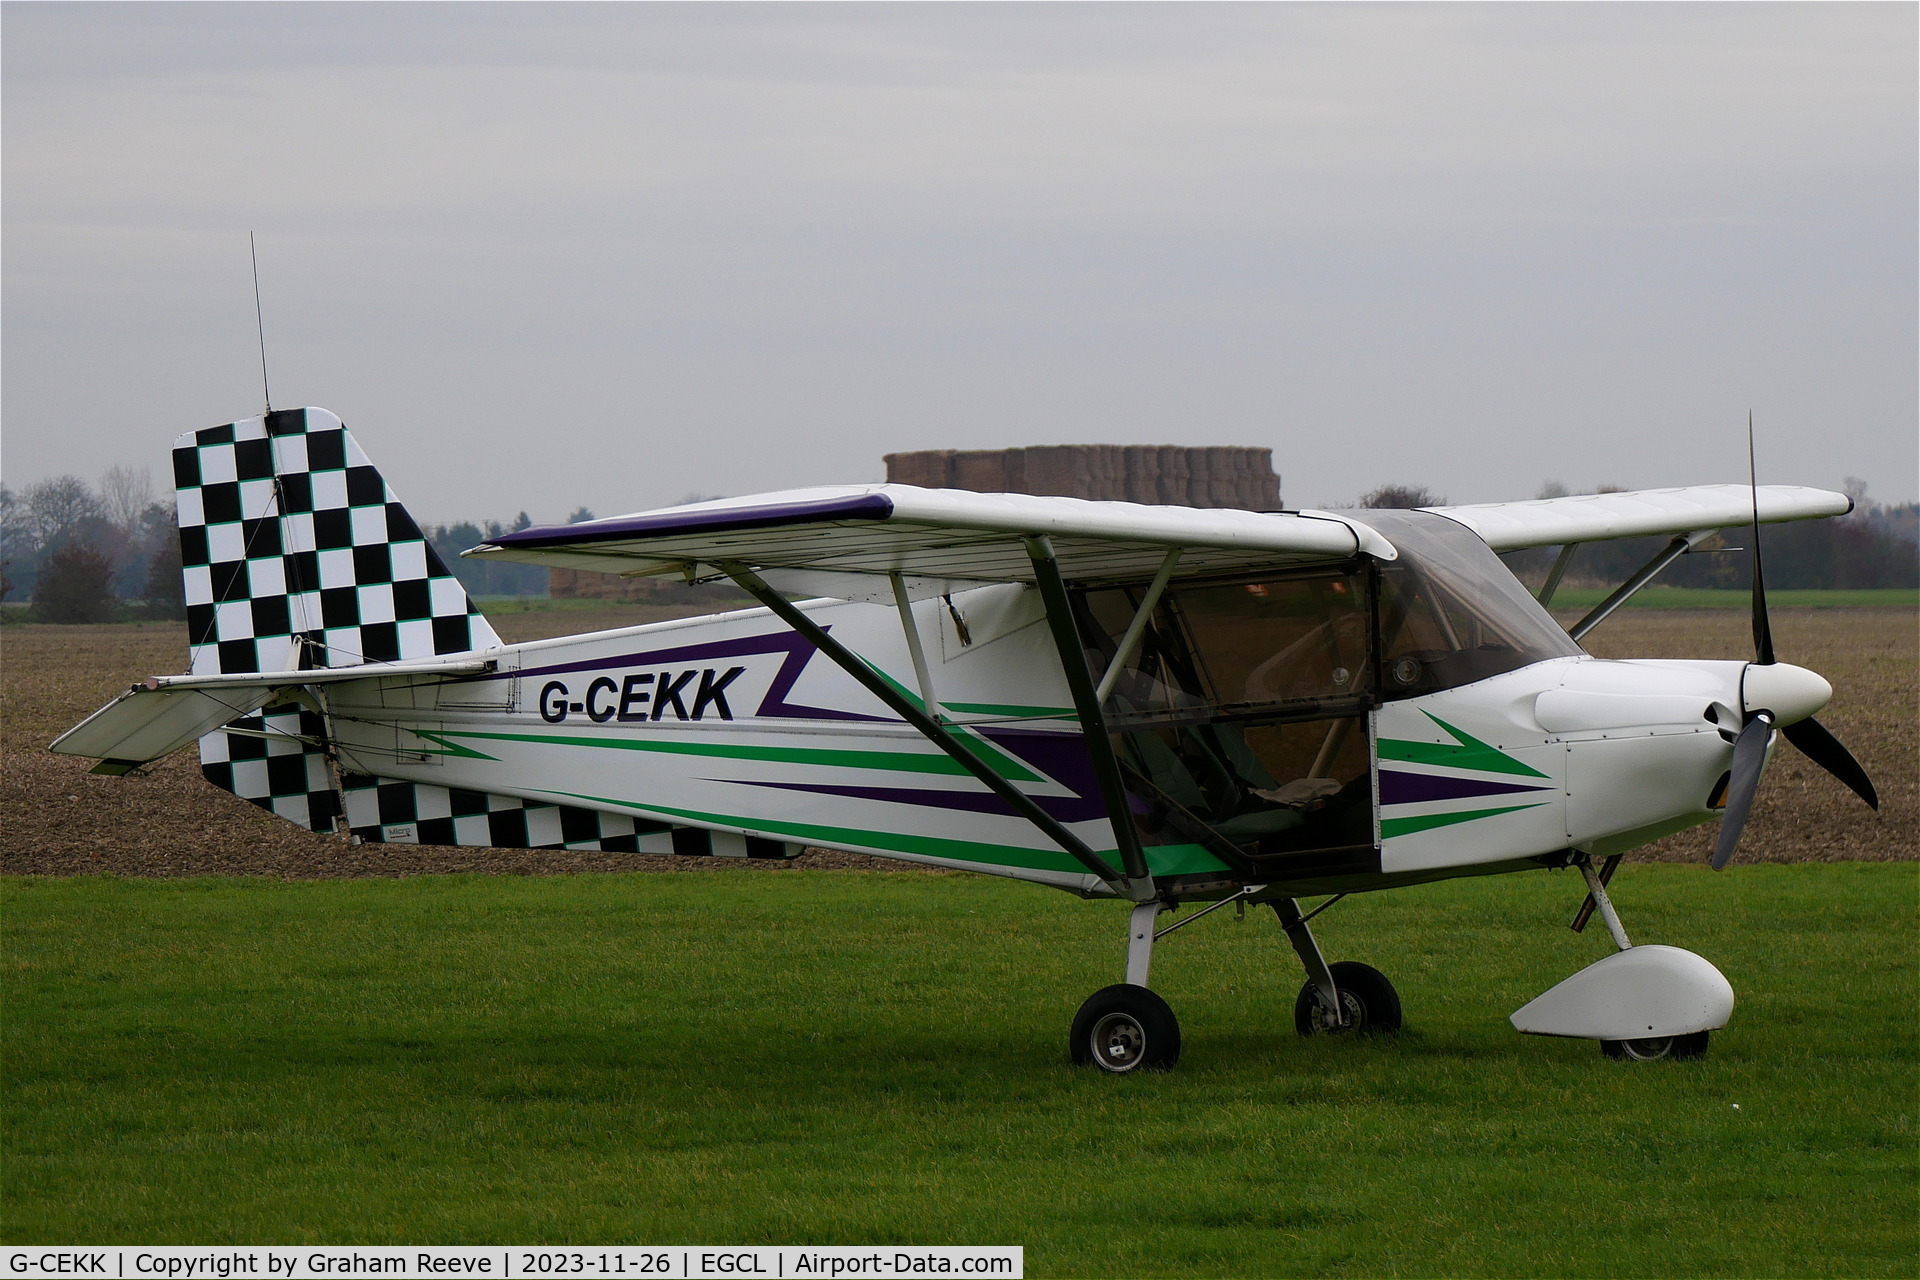 G-CEKK, 2007 Skyranger Swift 912S(1) C/N BMAA/HB/522, Parked at Fenland.